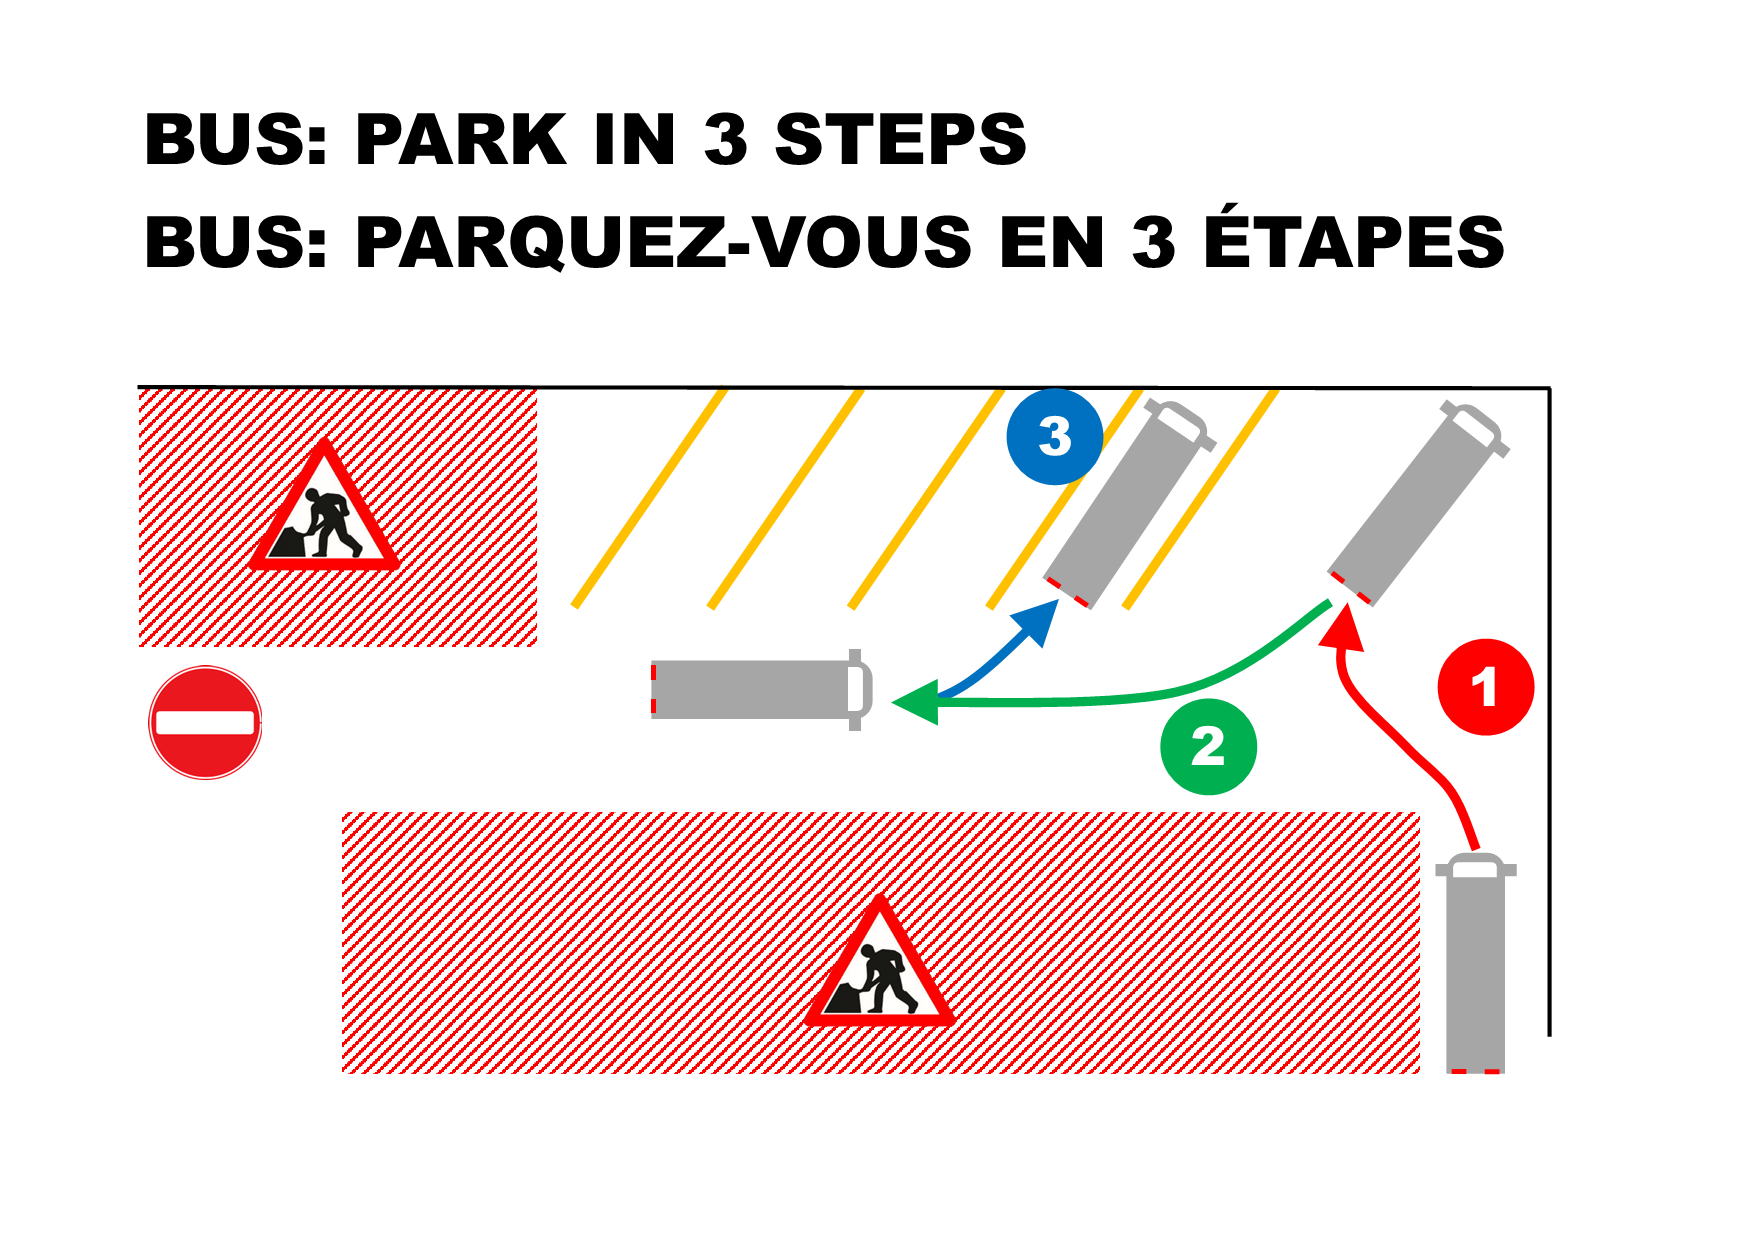 Bus parking 3 steps procedure